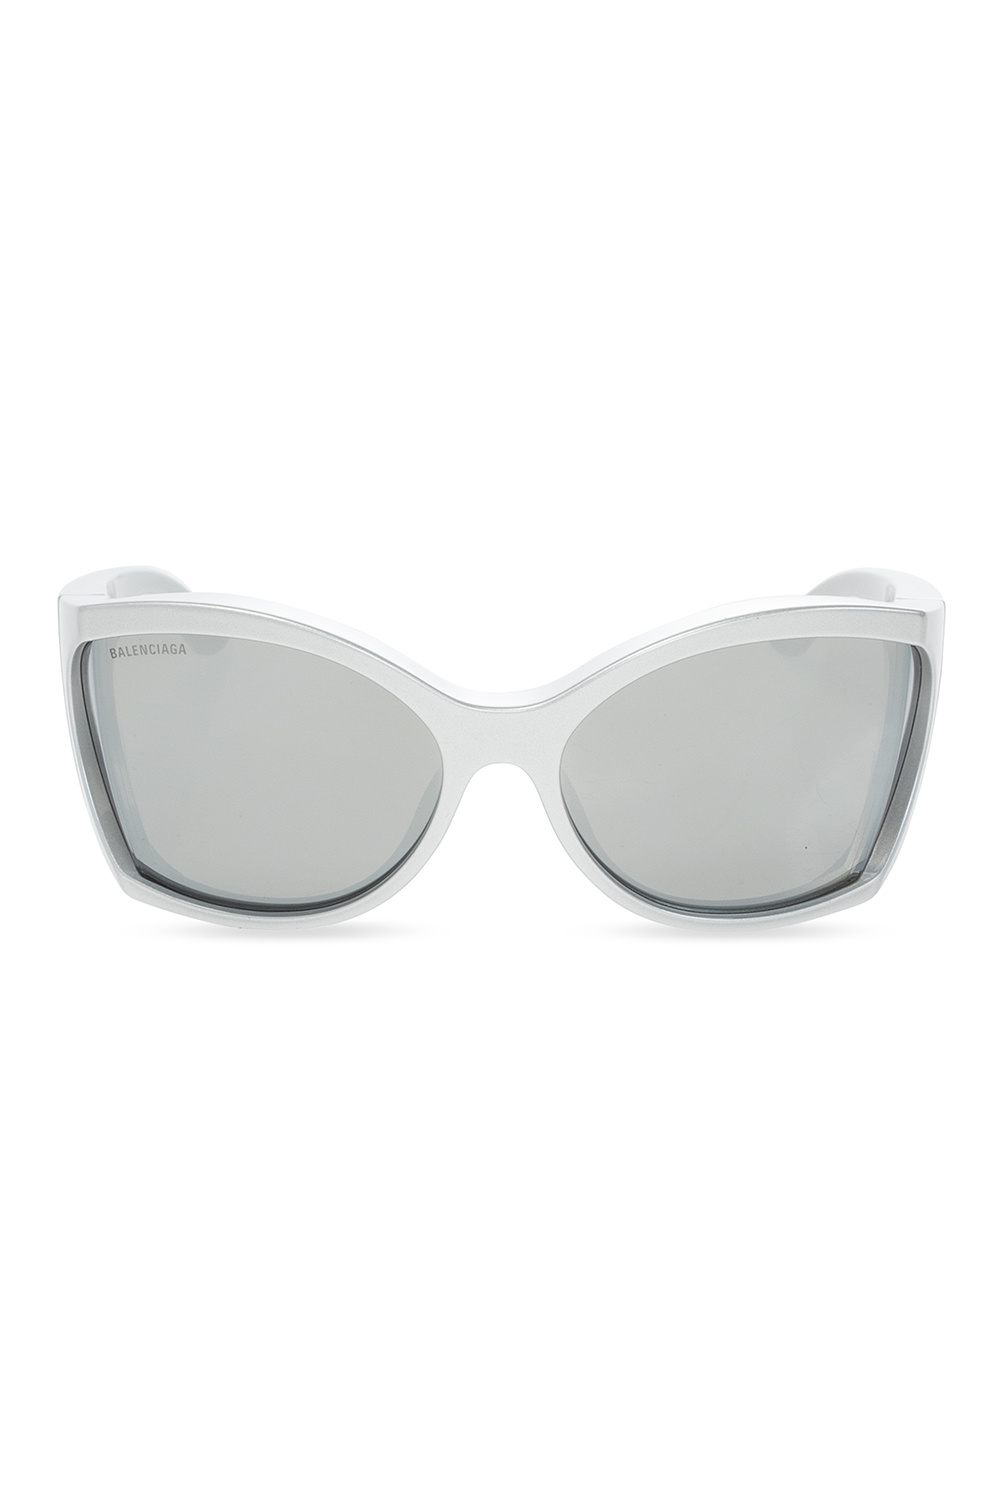 Balenciaga sunglasses PO0714 24 S3